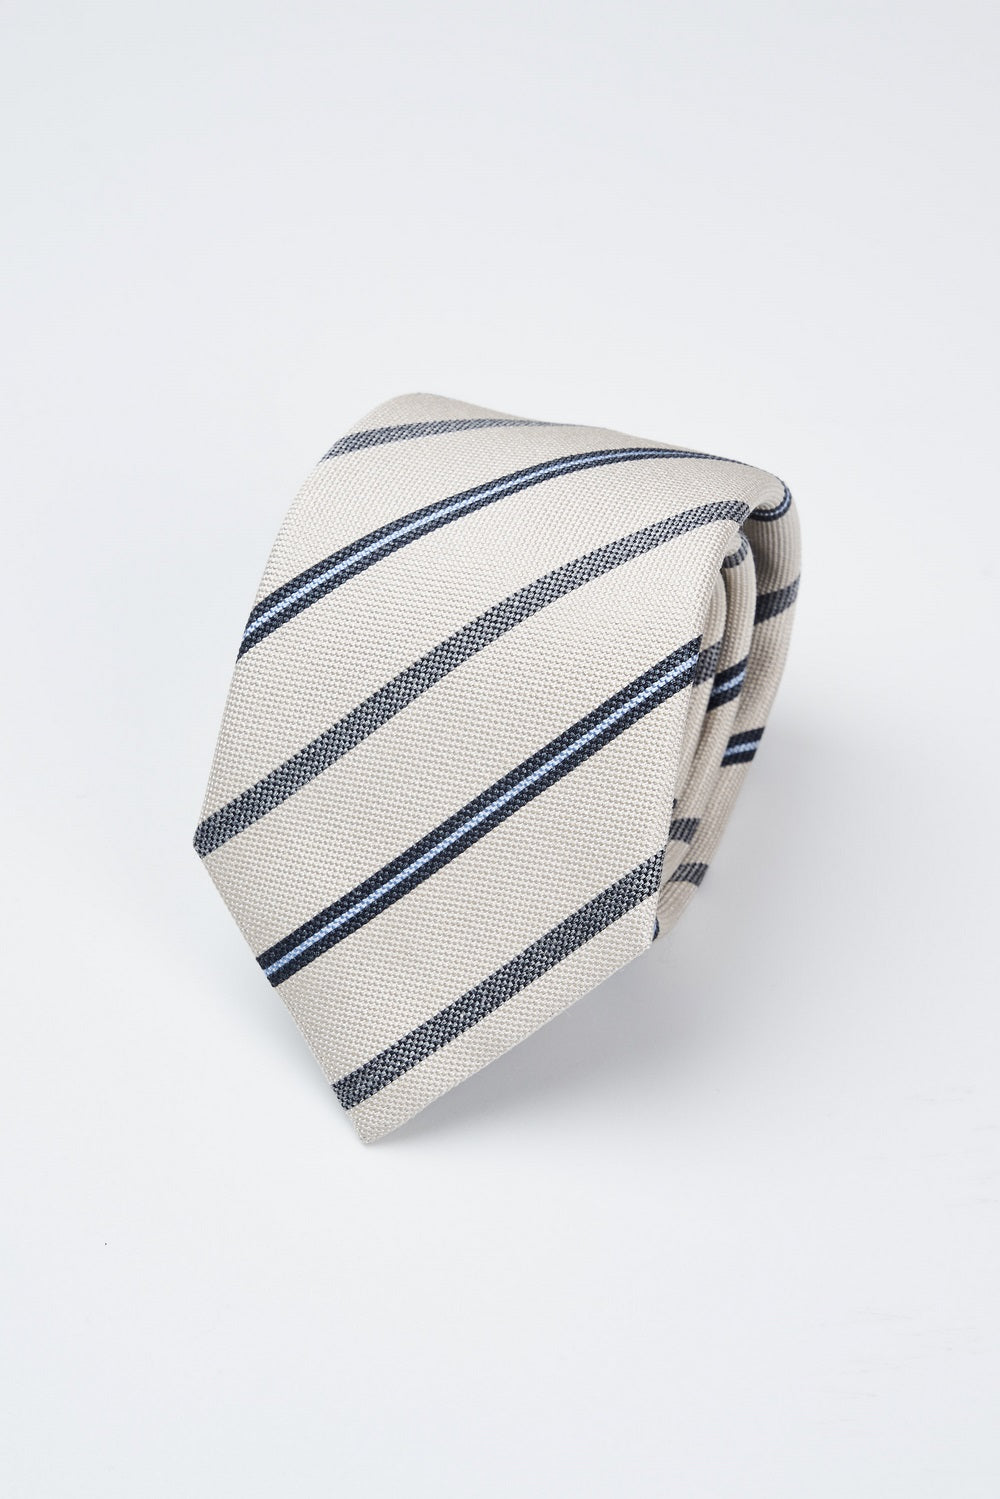 Cravatta in pura seta jacquard a righe